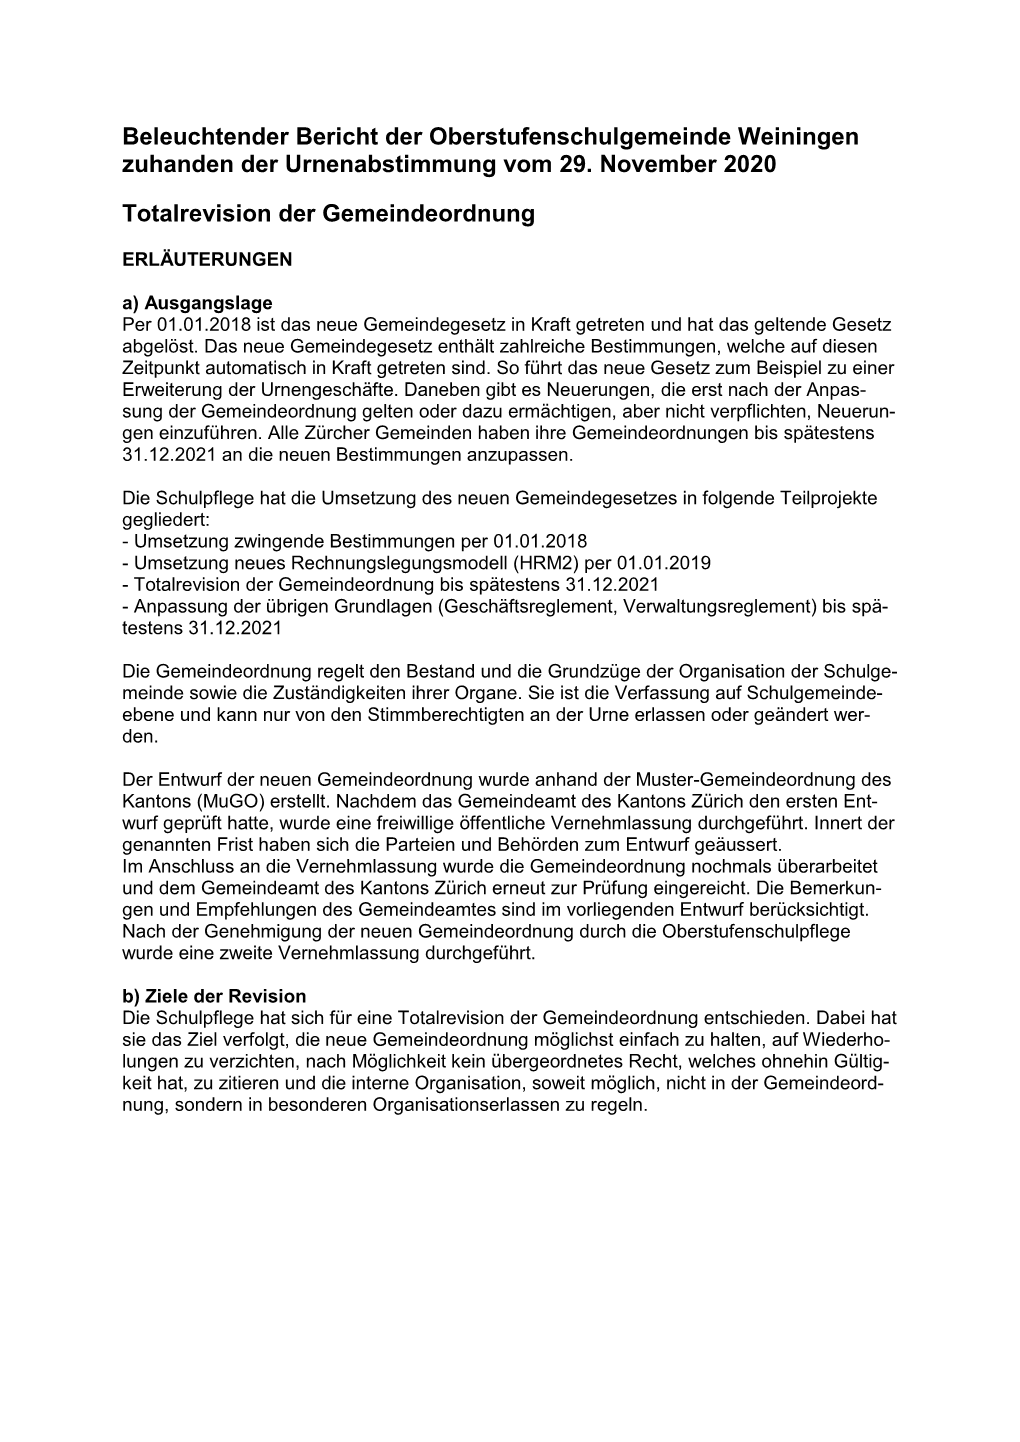 Beleuchtender Bericht Der Oberstufenschulgemeinde Weiningen Zuhanden Der Urnenabstimmung Vom 29